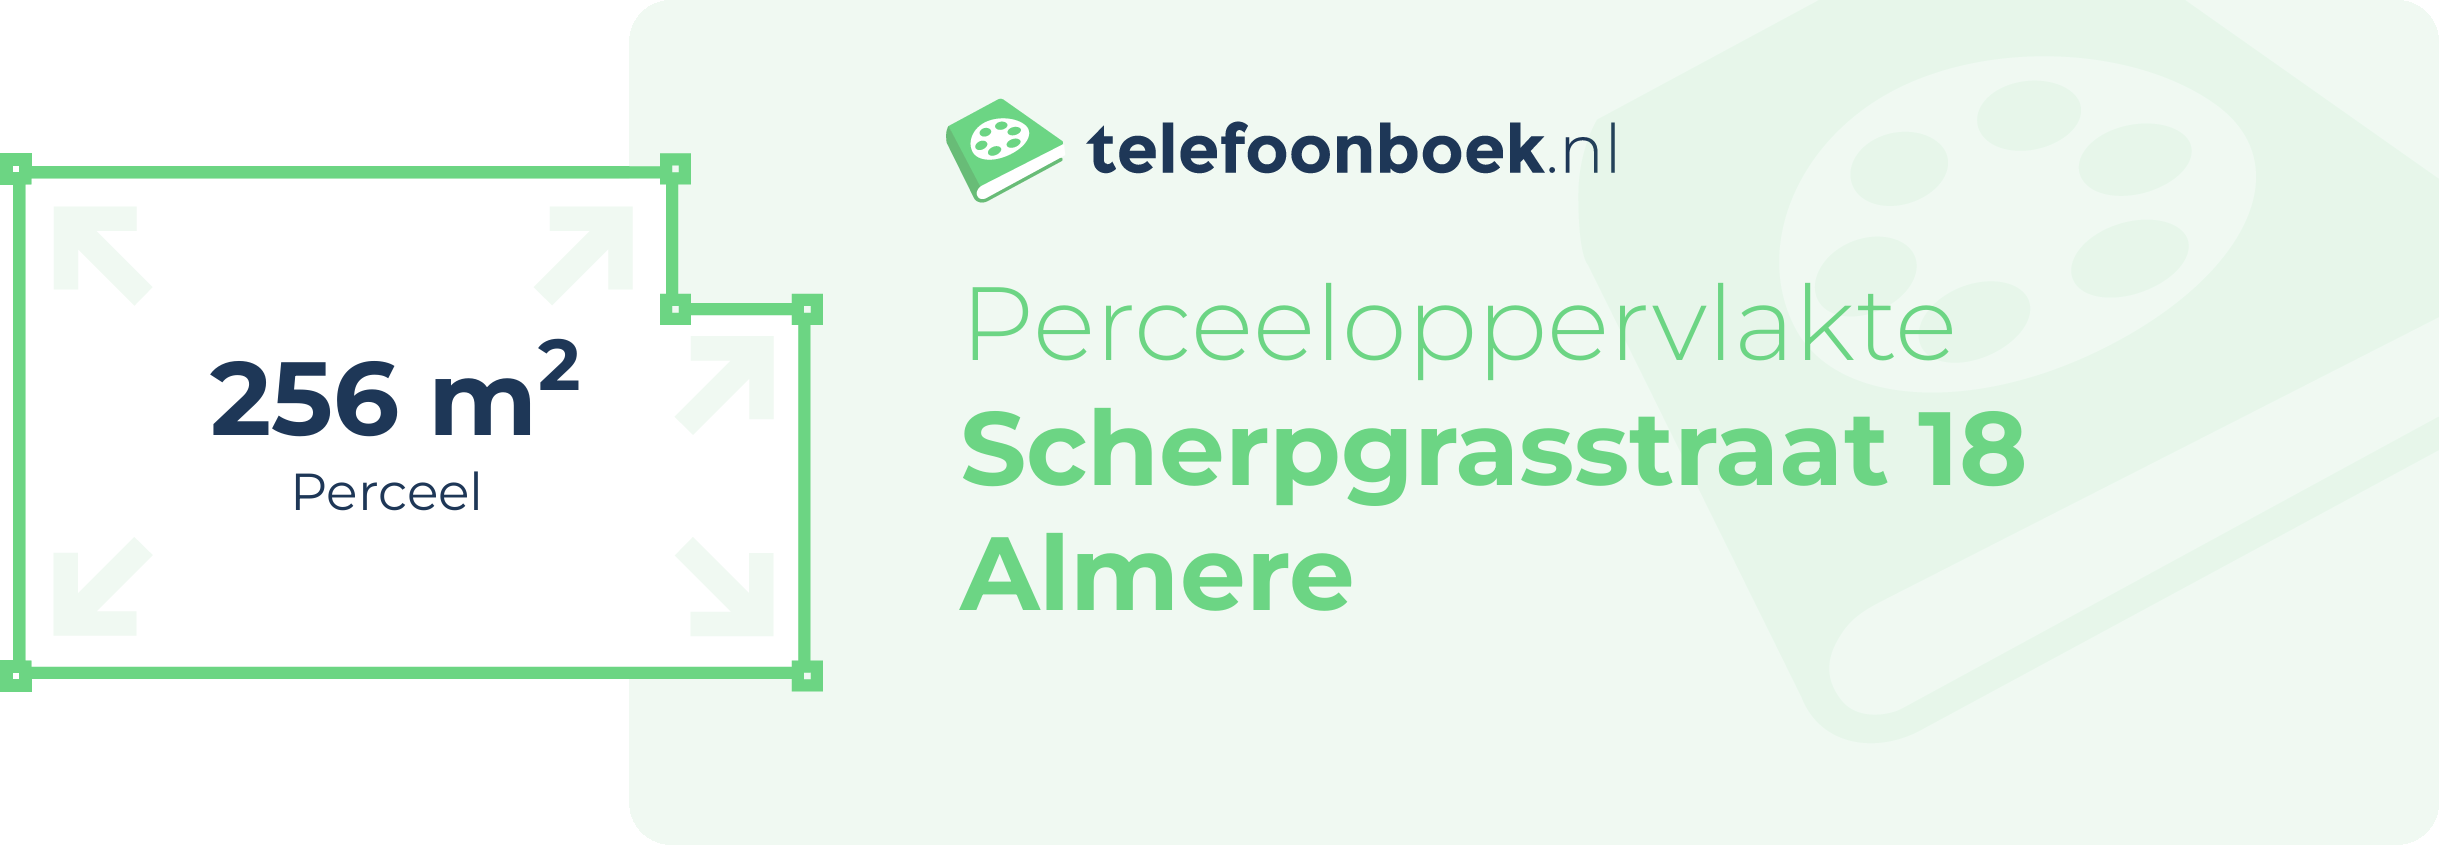 Perceeloppervlakte Scherpgrasstraat 18 Almere